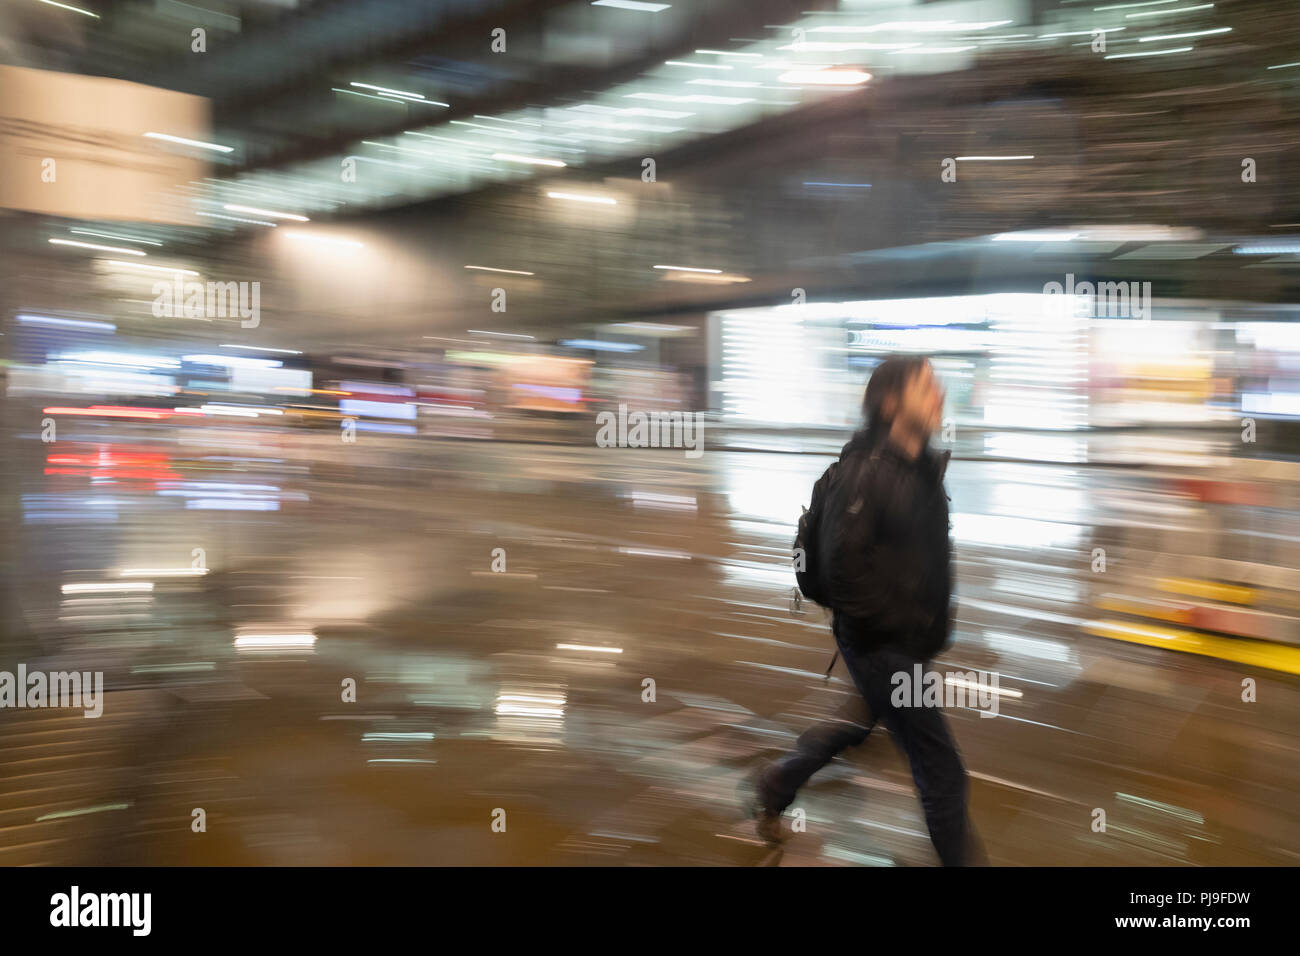 Man walking on urban street at night Stock Photo